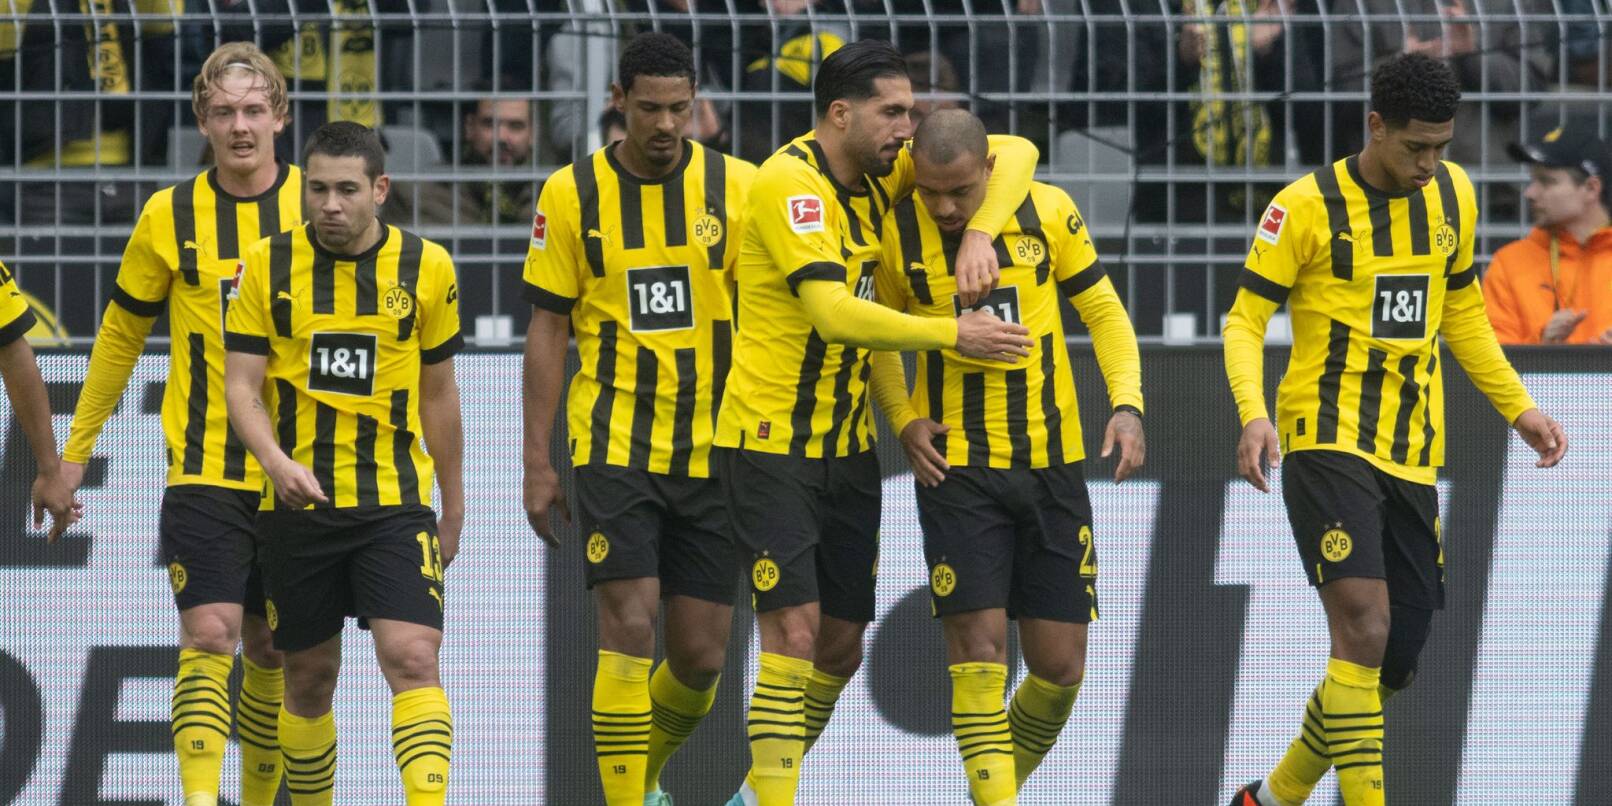 Dortmunds Donyell Malen (2.v.r.) jubelt mit seinen Mitspielern über seinen Treffer.